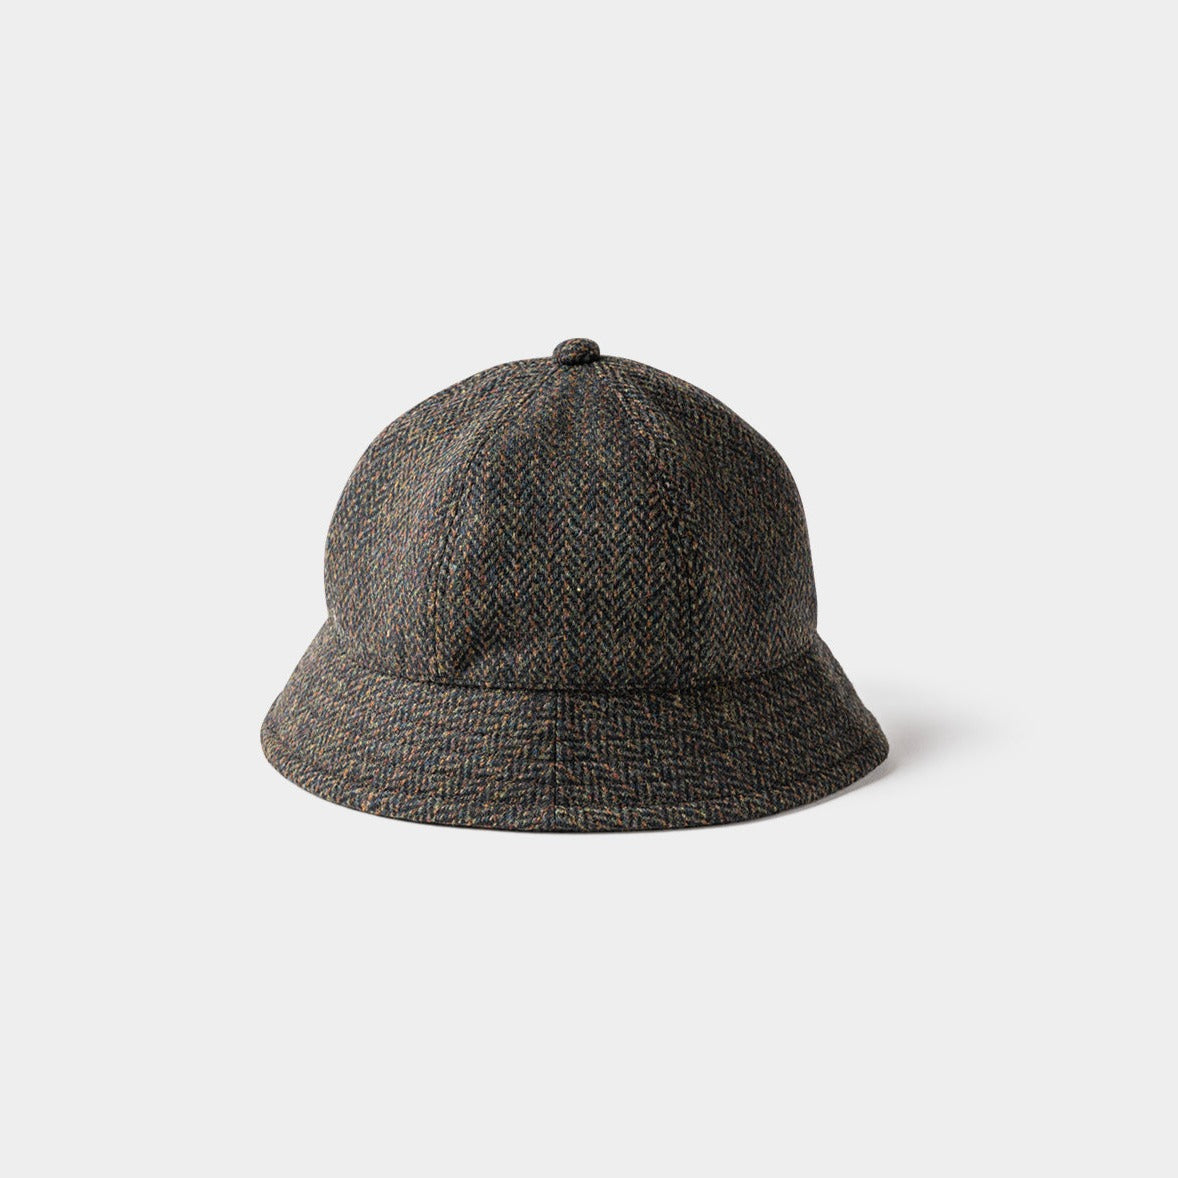 TIGHTBOOTH - TWEED HAT